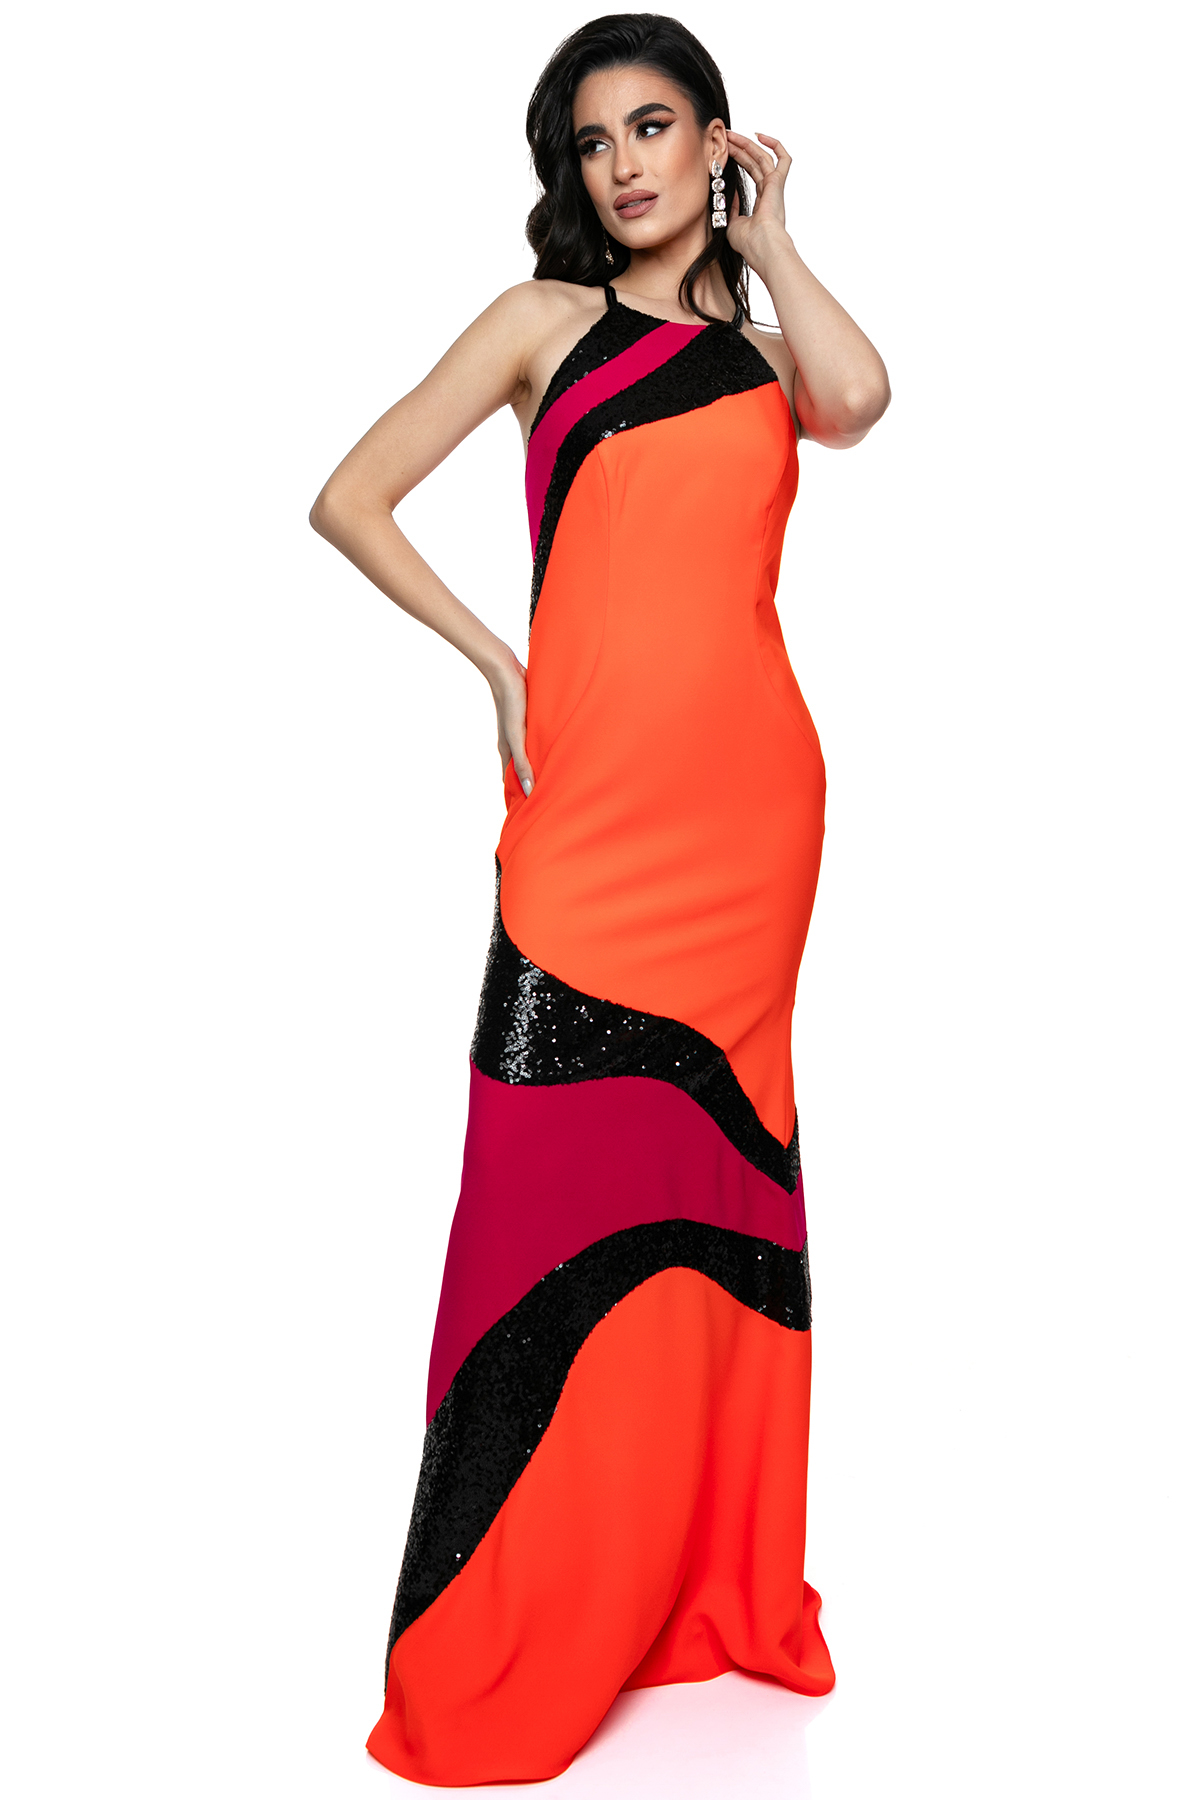 Στενό Φόρεμα με Παρτούς Ώμους και Δυναμική Χρωματική Σύνθεση